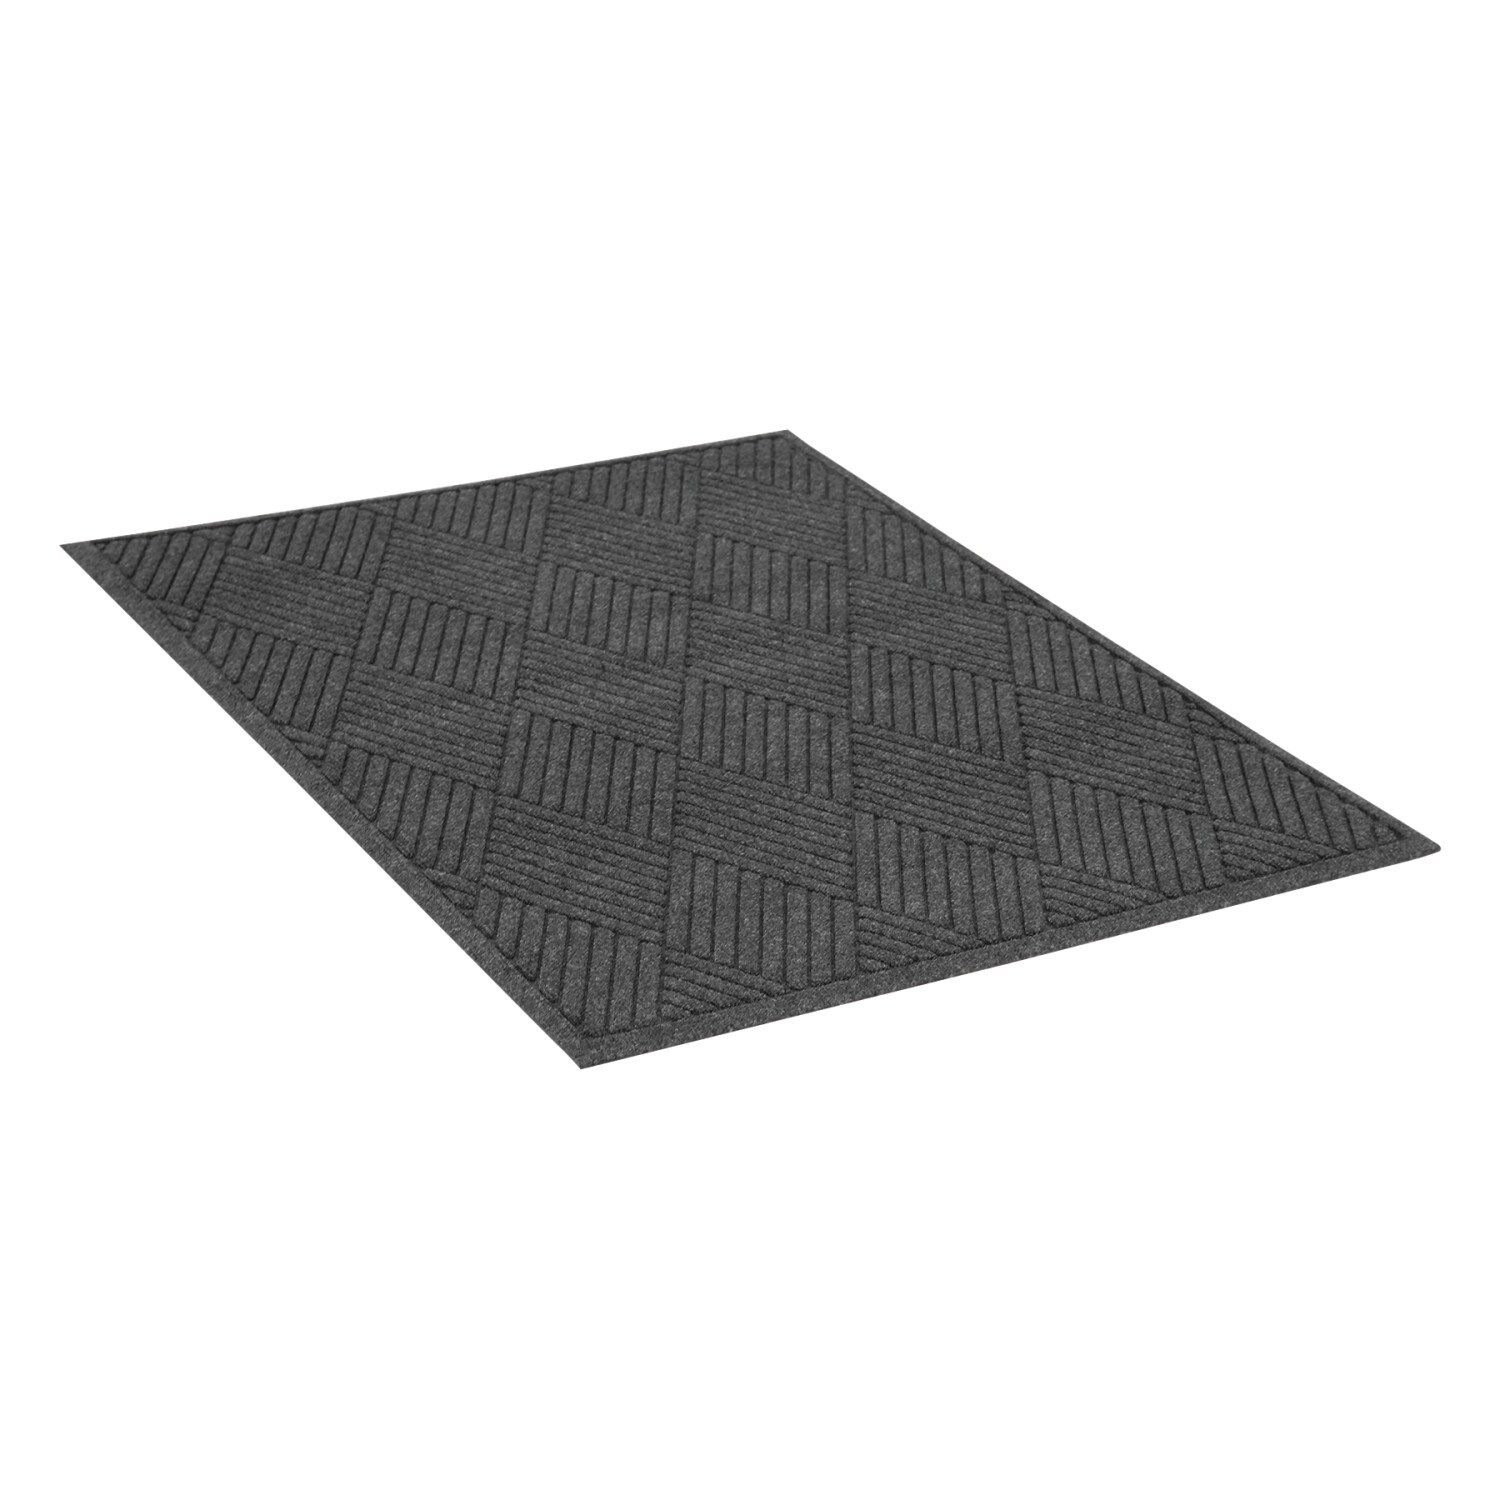 Charcoal Doormat